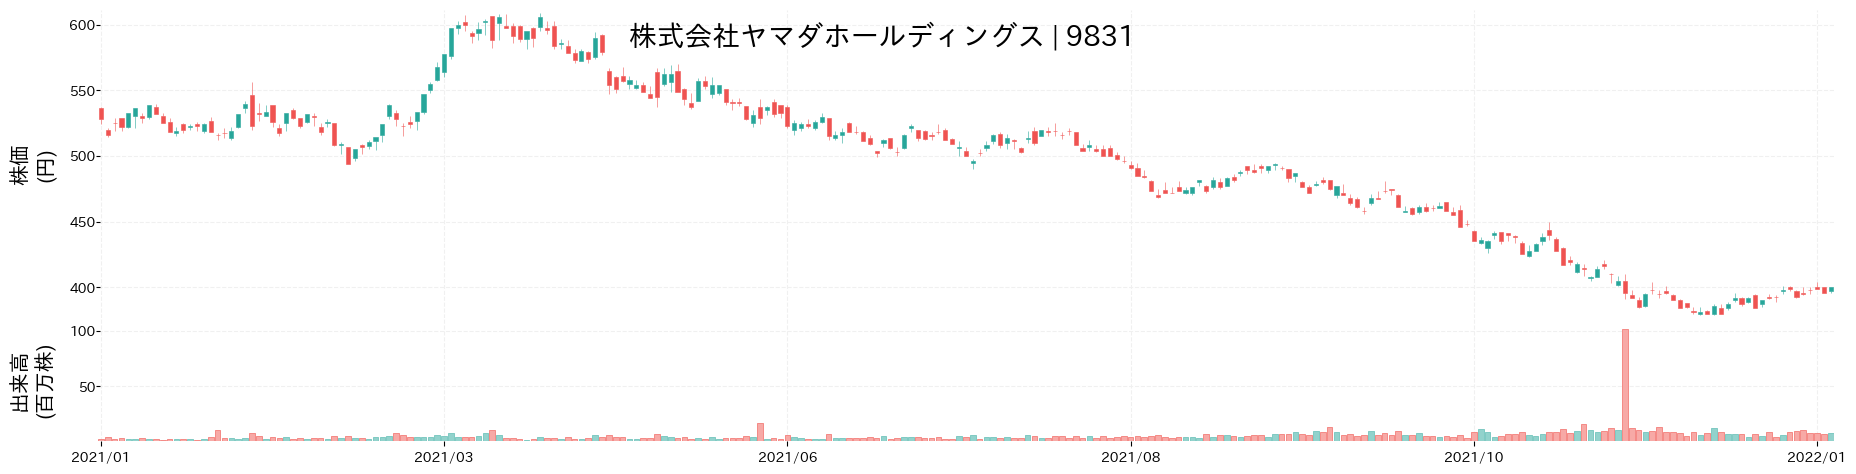 ヤマダホールディングスの株価推移(2021)